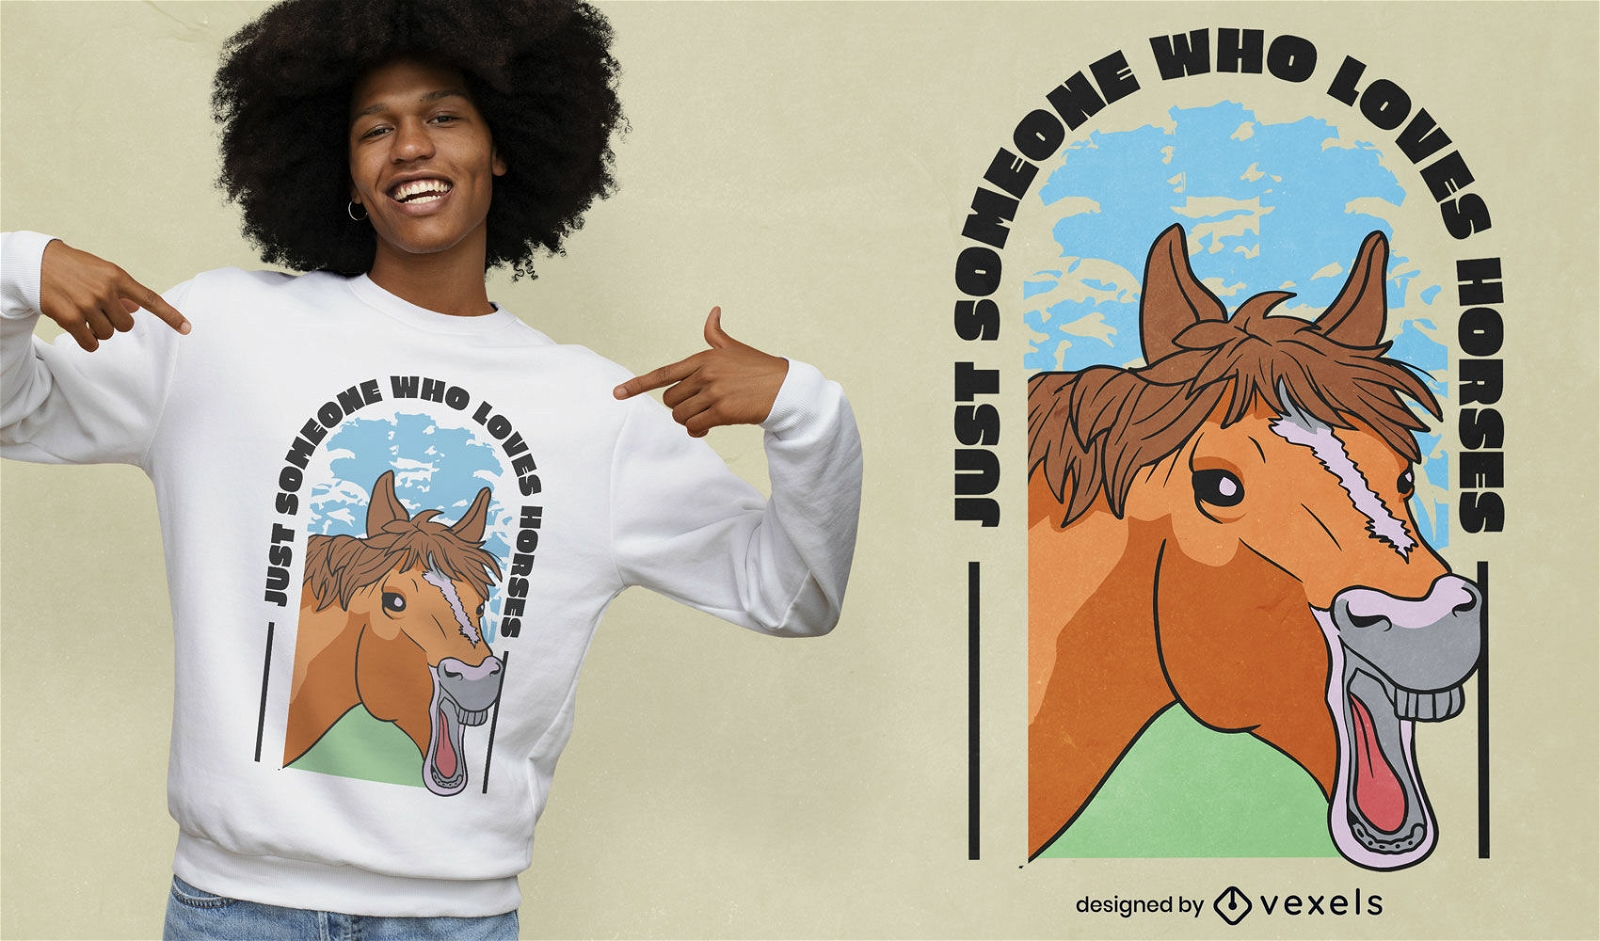 Animal engra?ado cavalo rindo design de t-shirt